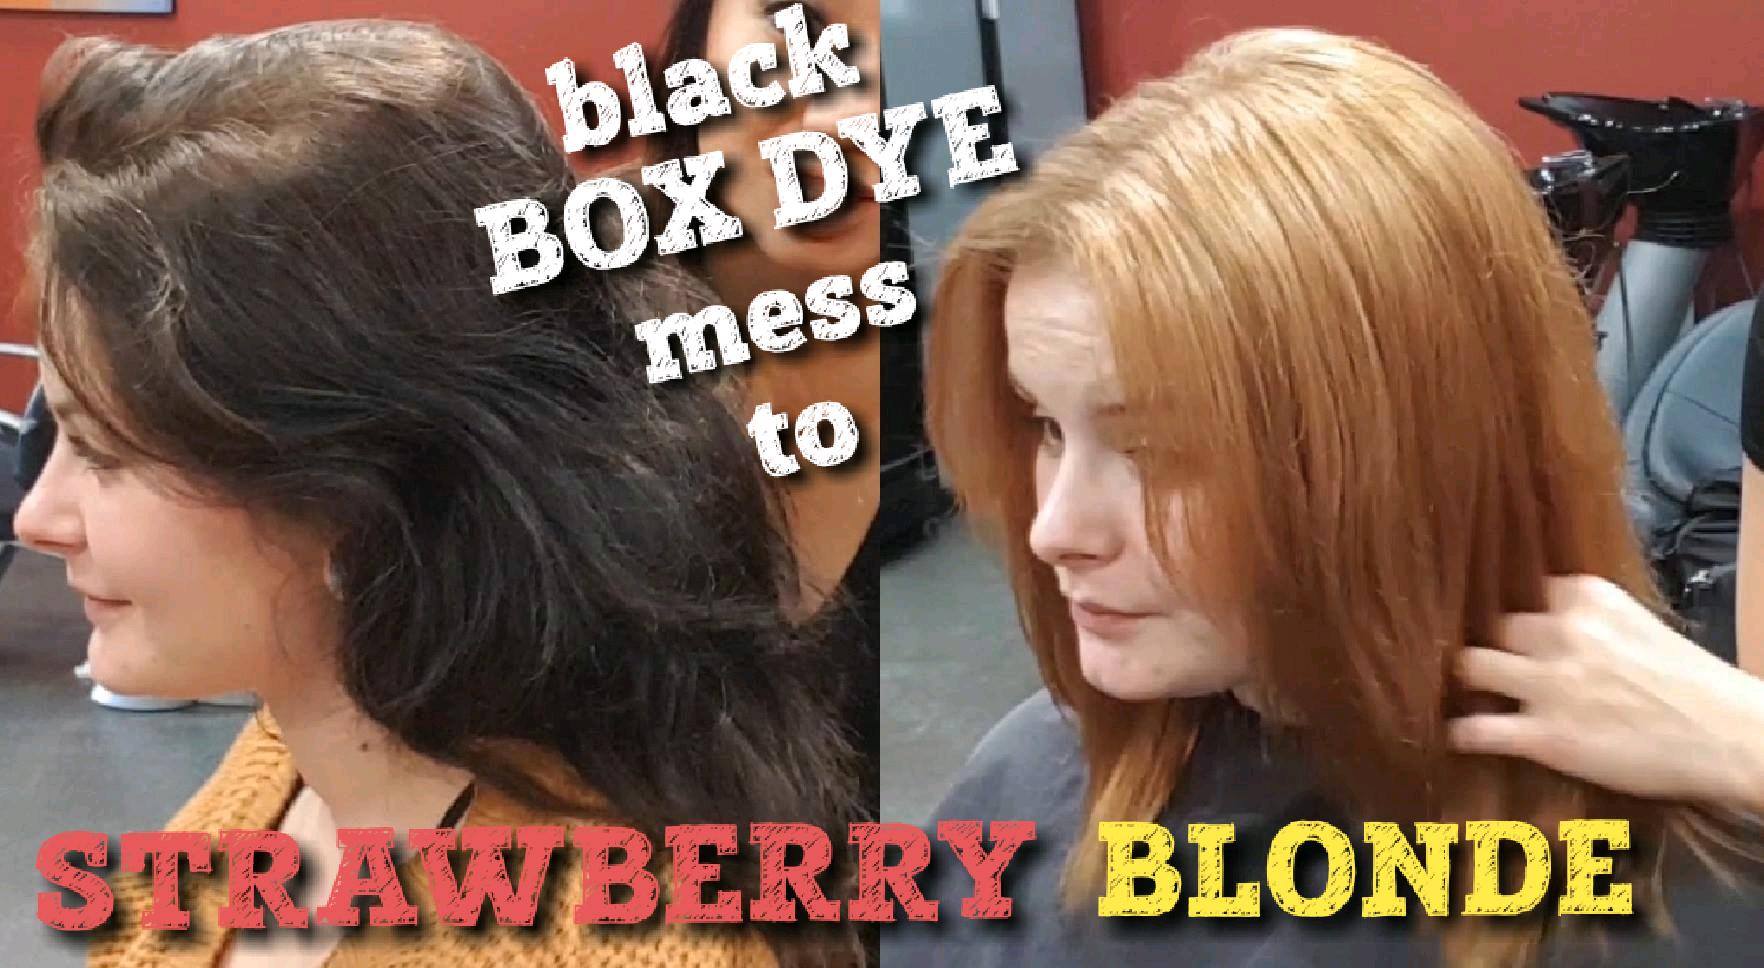 black box dye mess to strawberry blonde